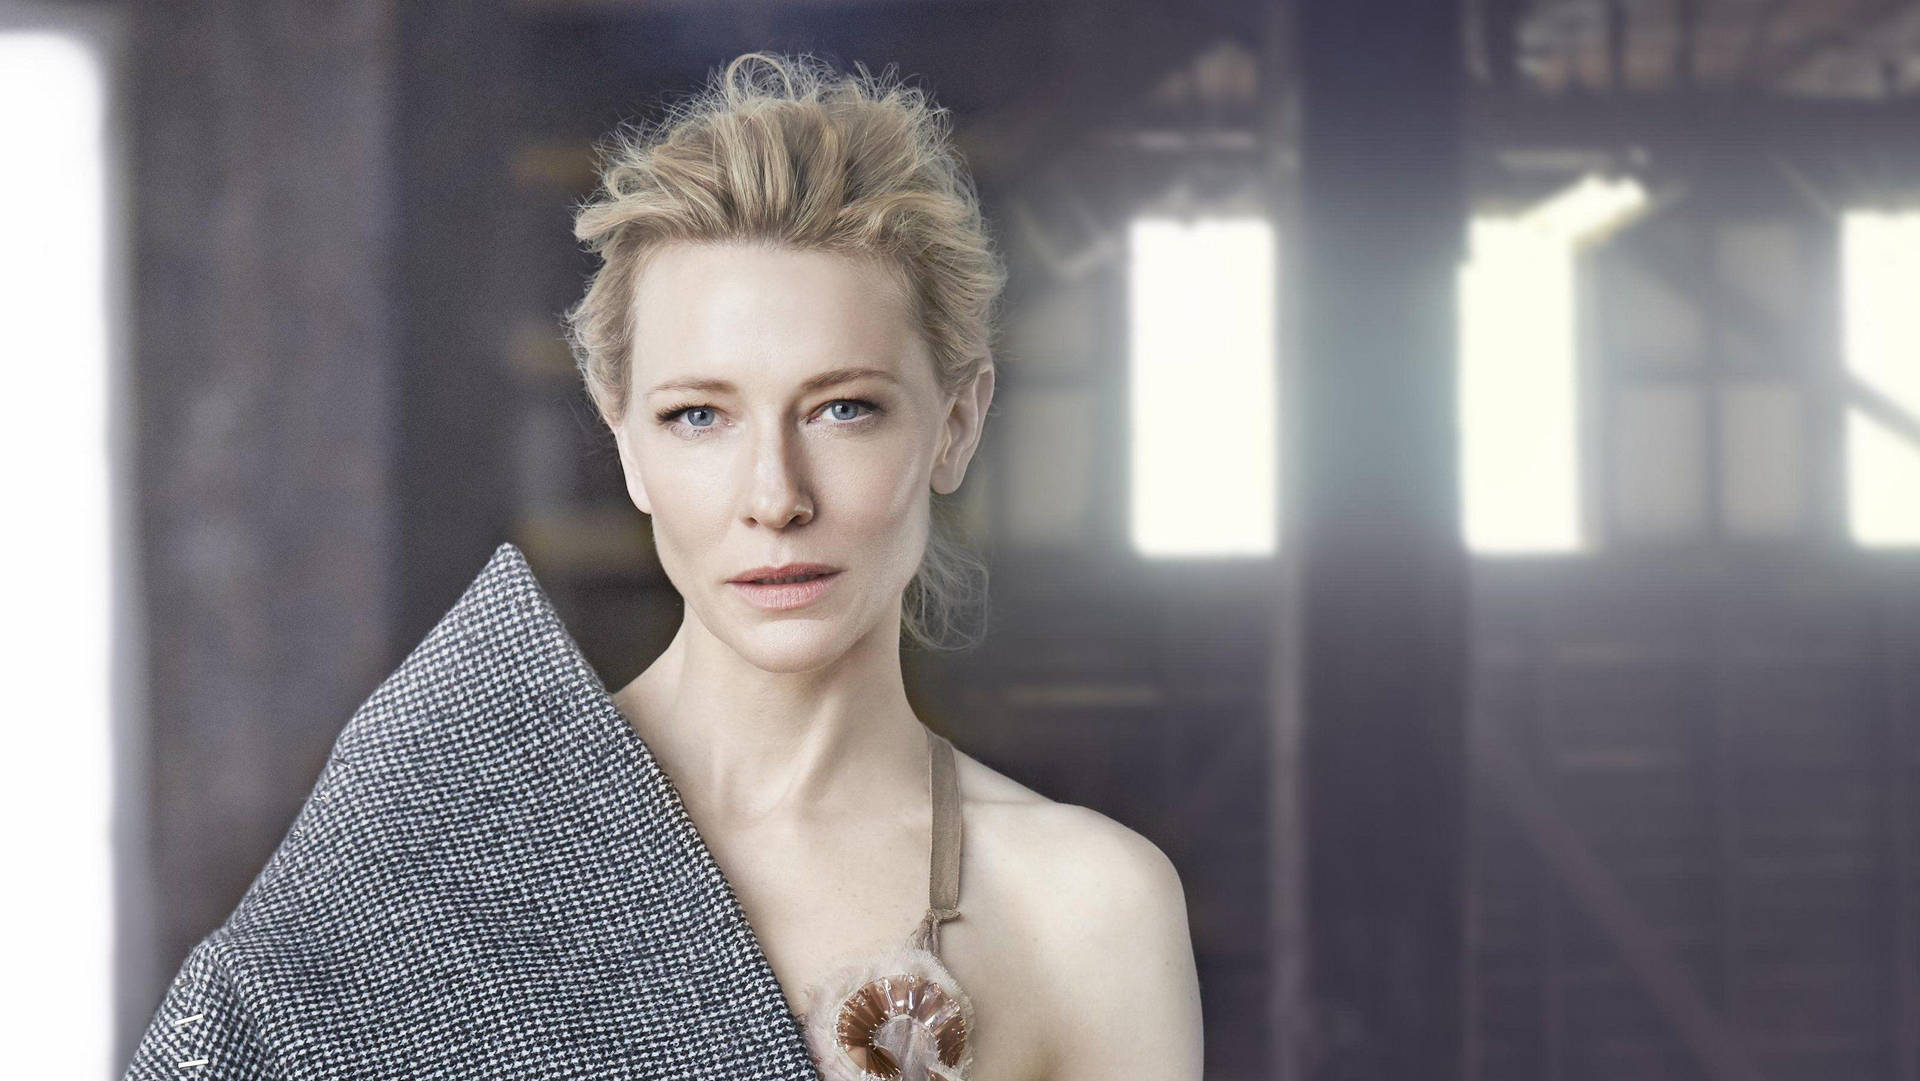 Cate Blanchett Light Portrait Background